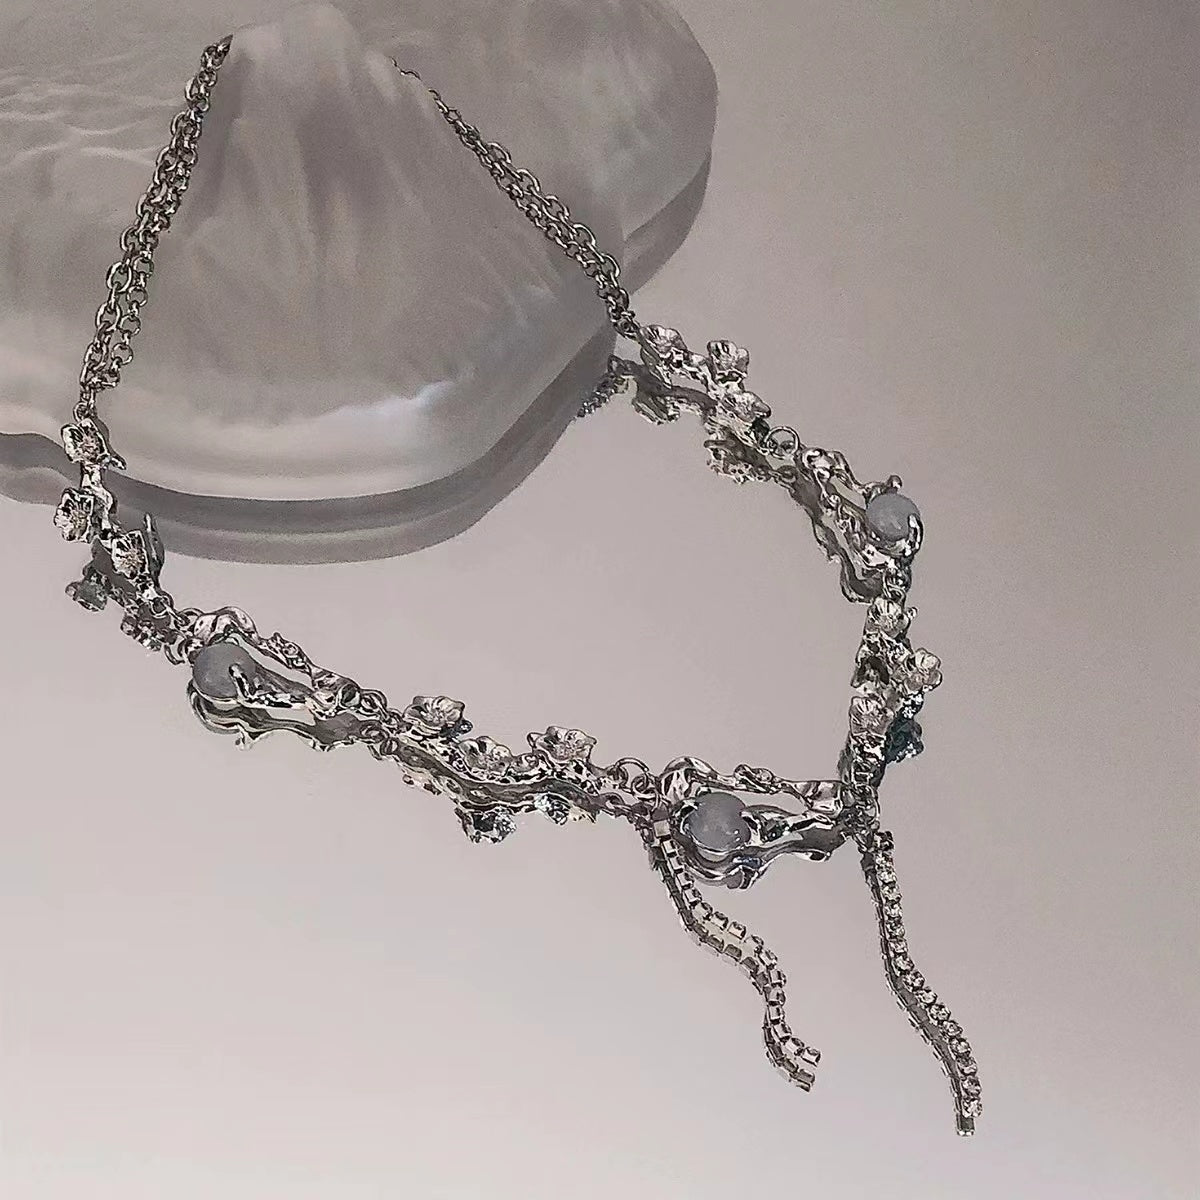 Cool wind peach moonstone rhinestone tassel necklace